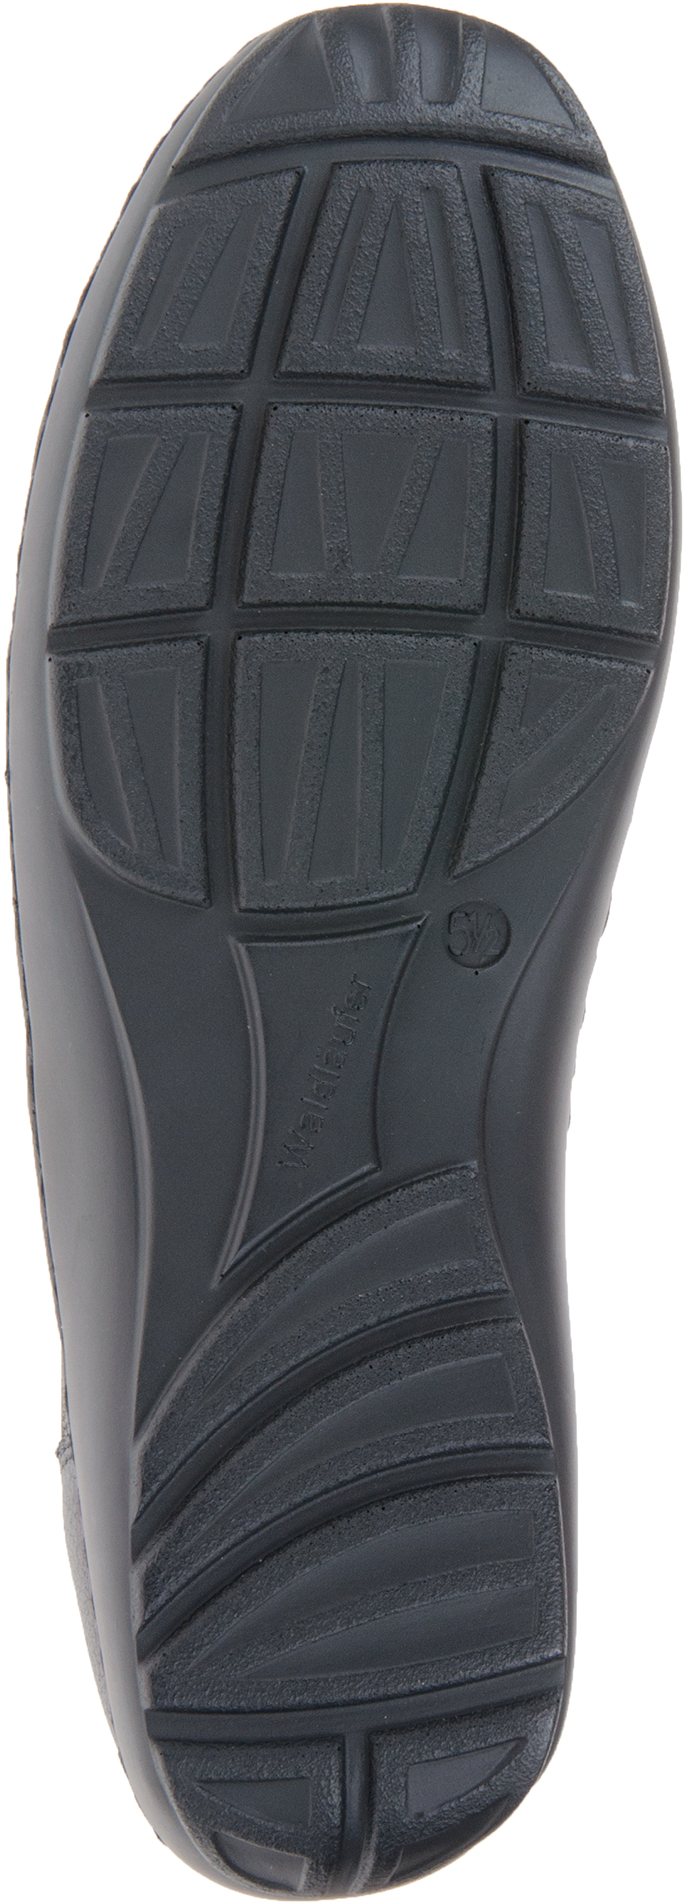 Waldlaufer Henni 301 Black Leather 496301 172 001 - Everyday Shoes ...